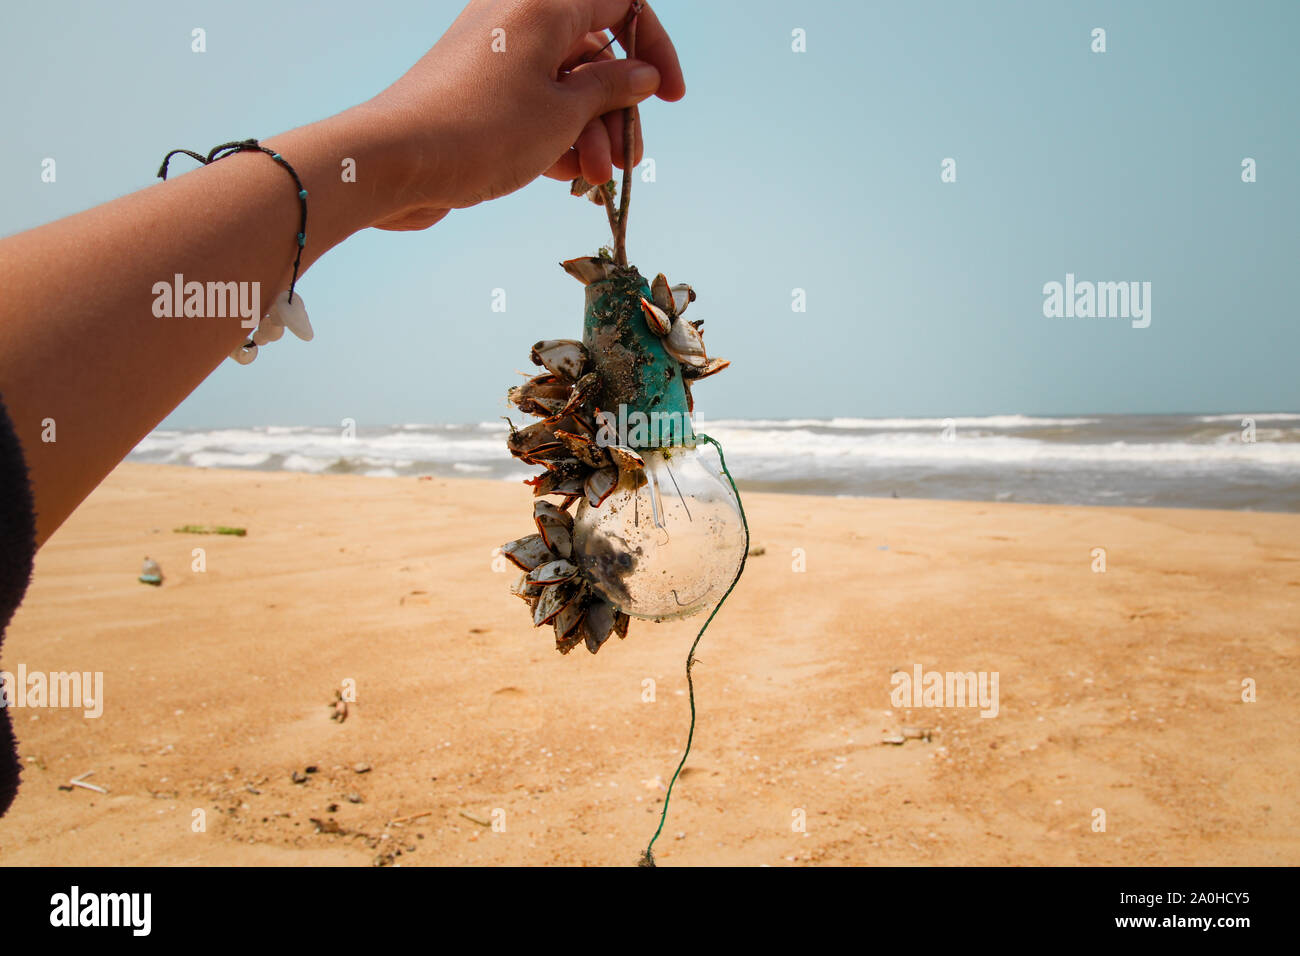 Strand sauber, die Bekämpfung der Umweltverschmutzung und zur Förderung der positiven Veränderungen Stockfoto